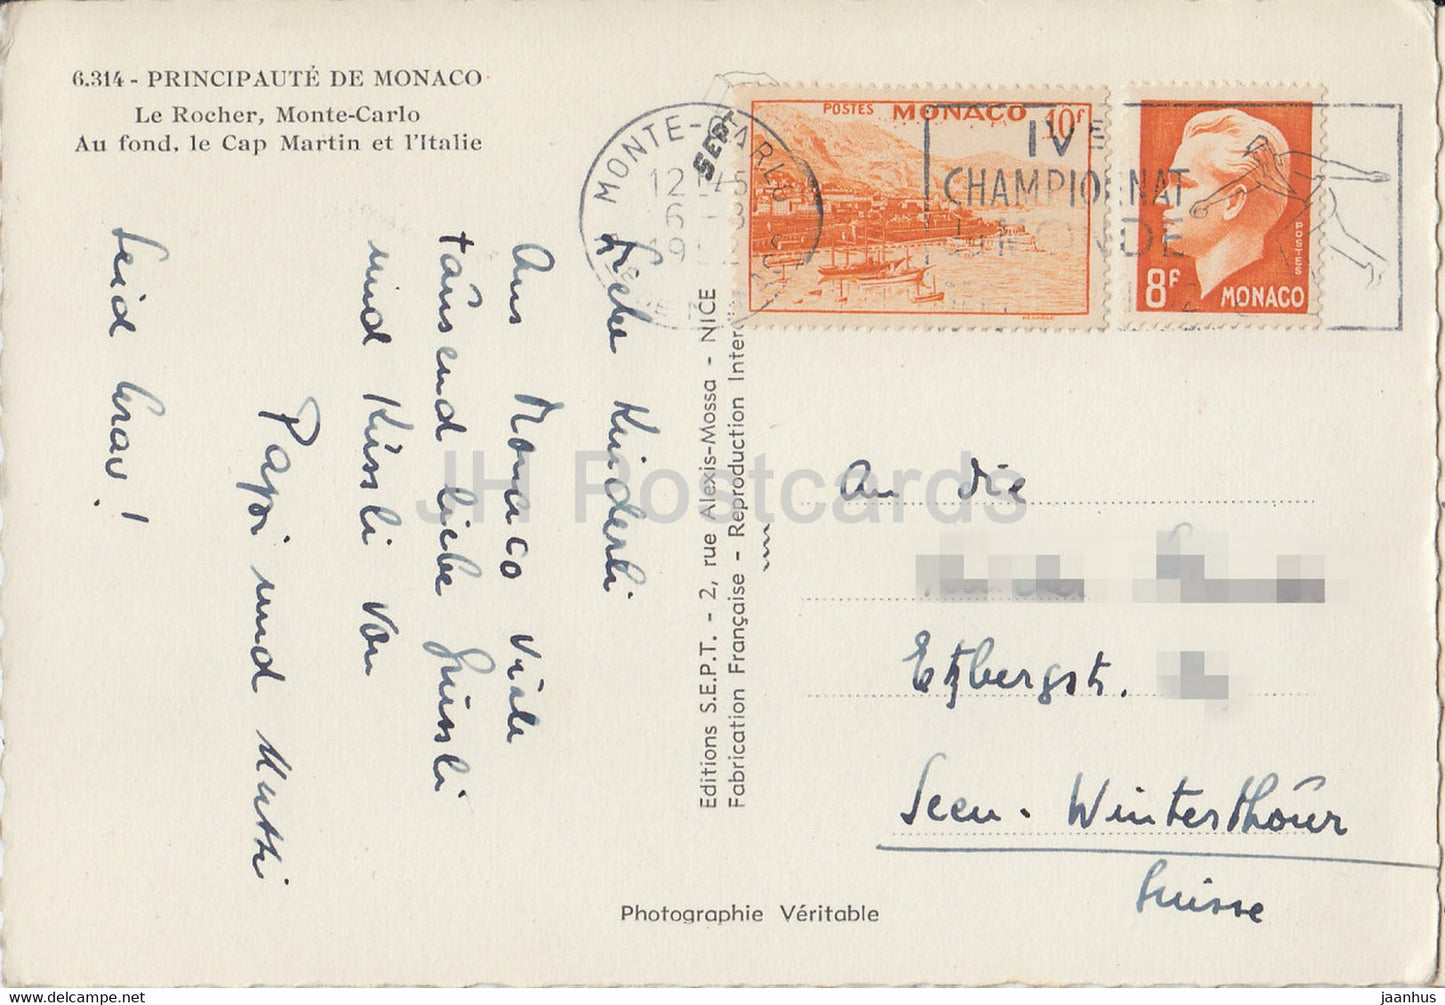 Le Rocher - Monte Carlo - Au Fond Le Cap Martin et l'Italie - carte postale ancienne - 1952 - Monaco - occasion